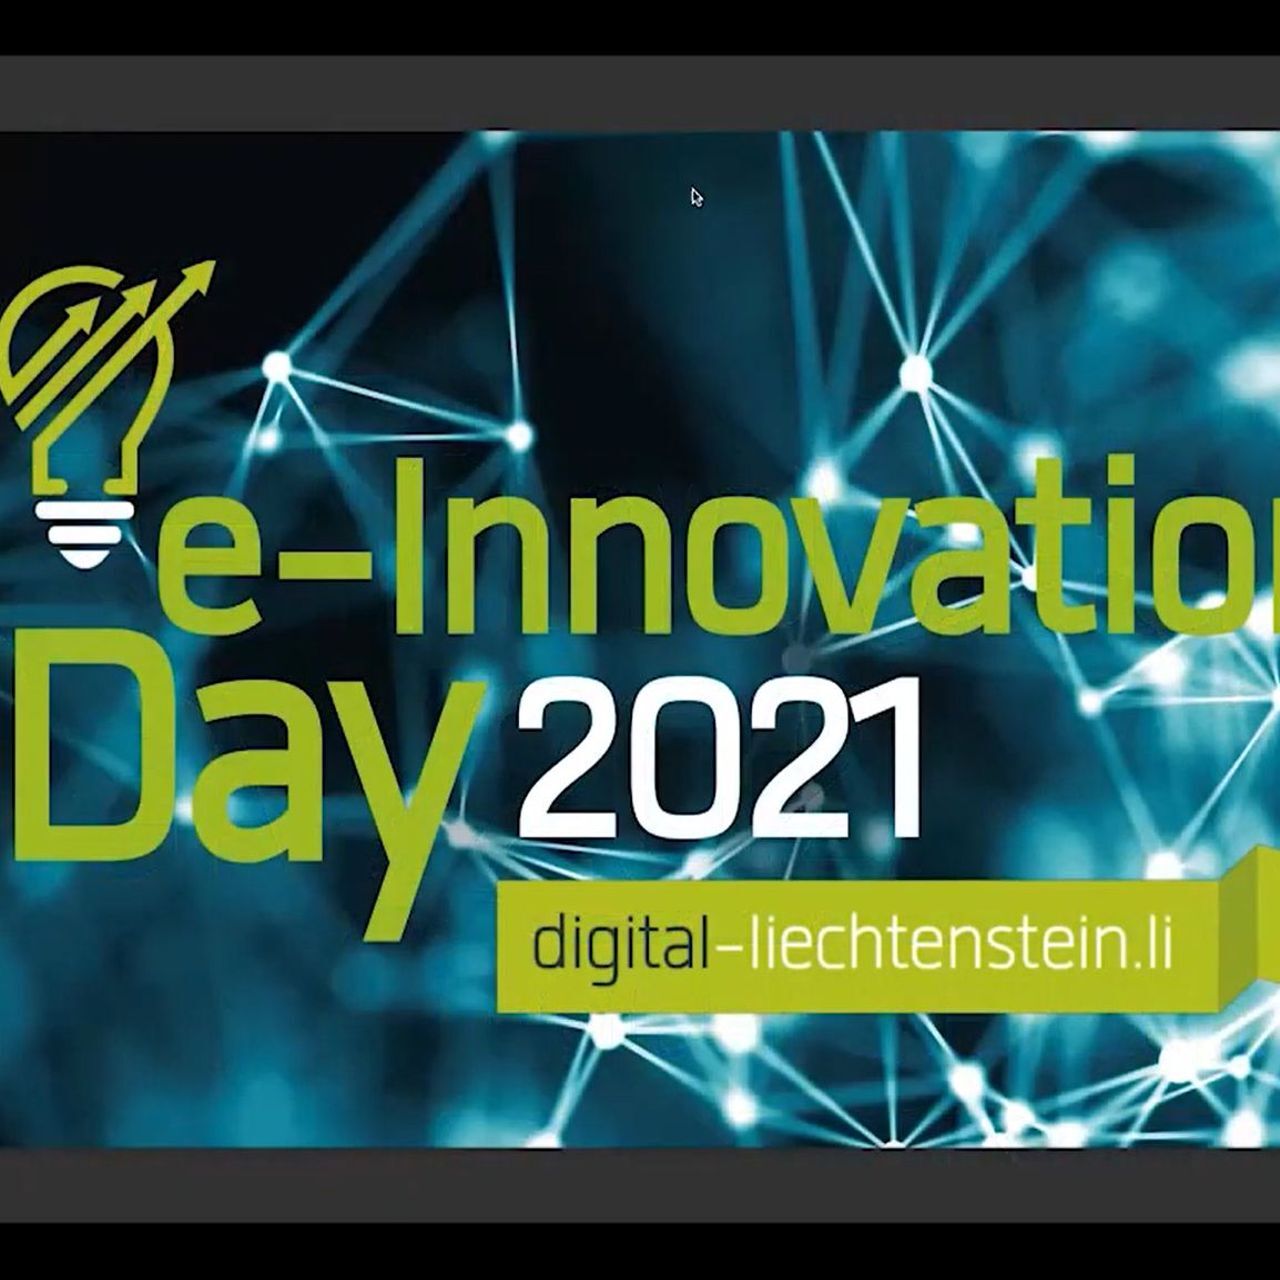 e-Innovation Day: початкова рамка вебінару «e-Innovation» Ліхтенштейн 2021